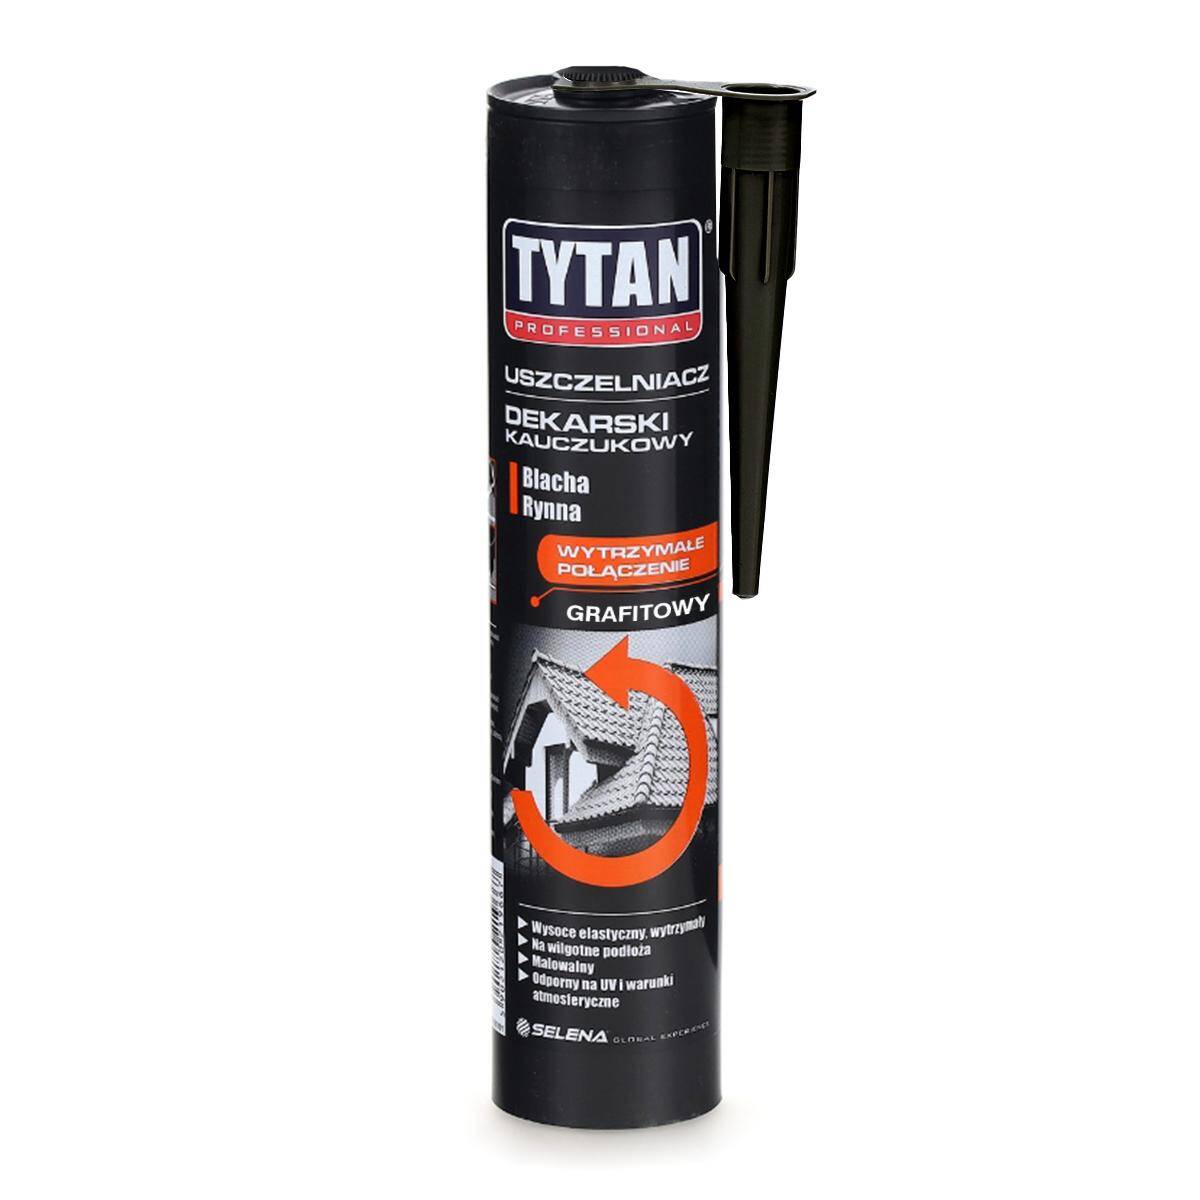 Uszczelniacz dekarski kauczukowy grafitowy 280 ml TYTAN Professional